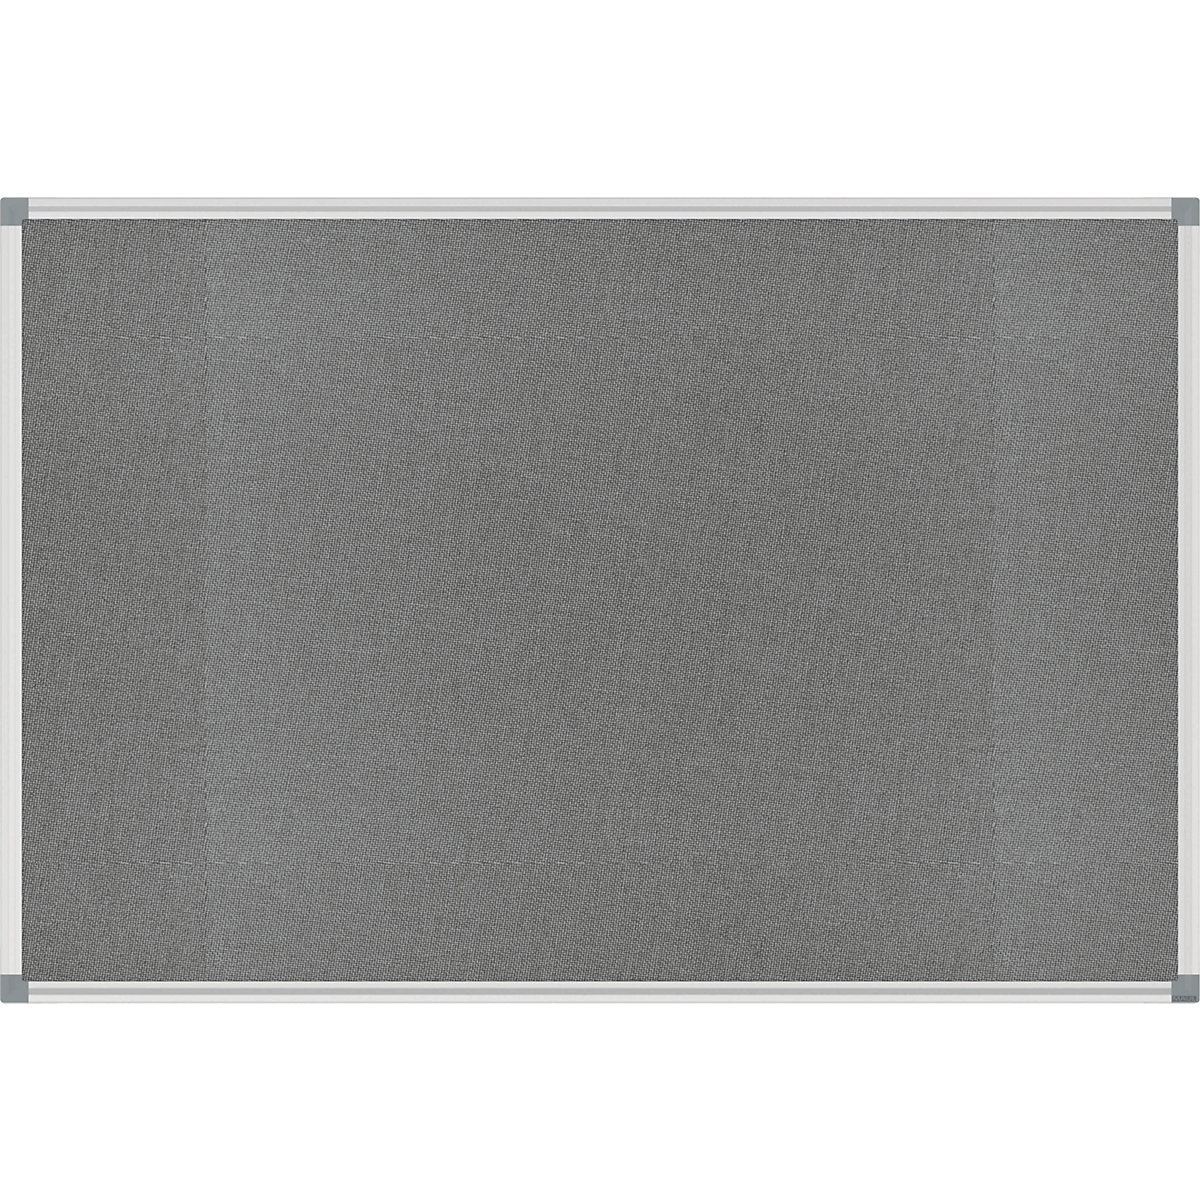 MAUL – Nástěnka STANDARD, stabilní, textil, šedá, š x v 900 x 600 mm